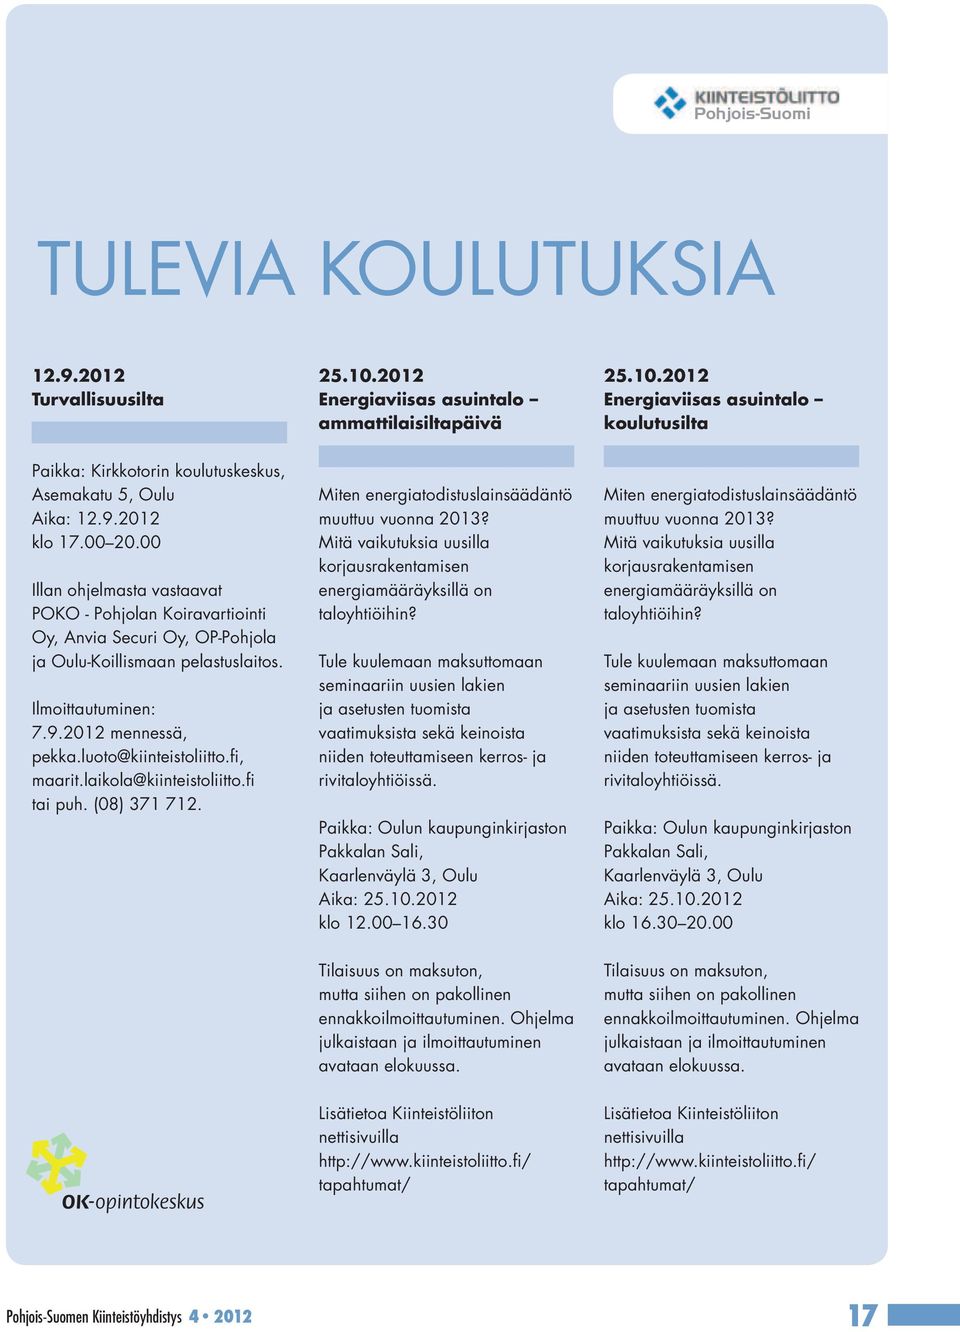 luoto@kiinteistoliitto.fi, maarit.laikola@kiinteistoliitto.fi tai puh. (08) 371 712. Miten energiatodistuslainsäädäntö muuttuu vuonna 2013?